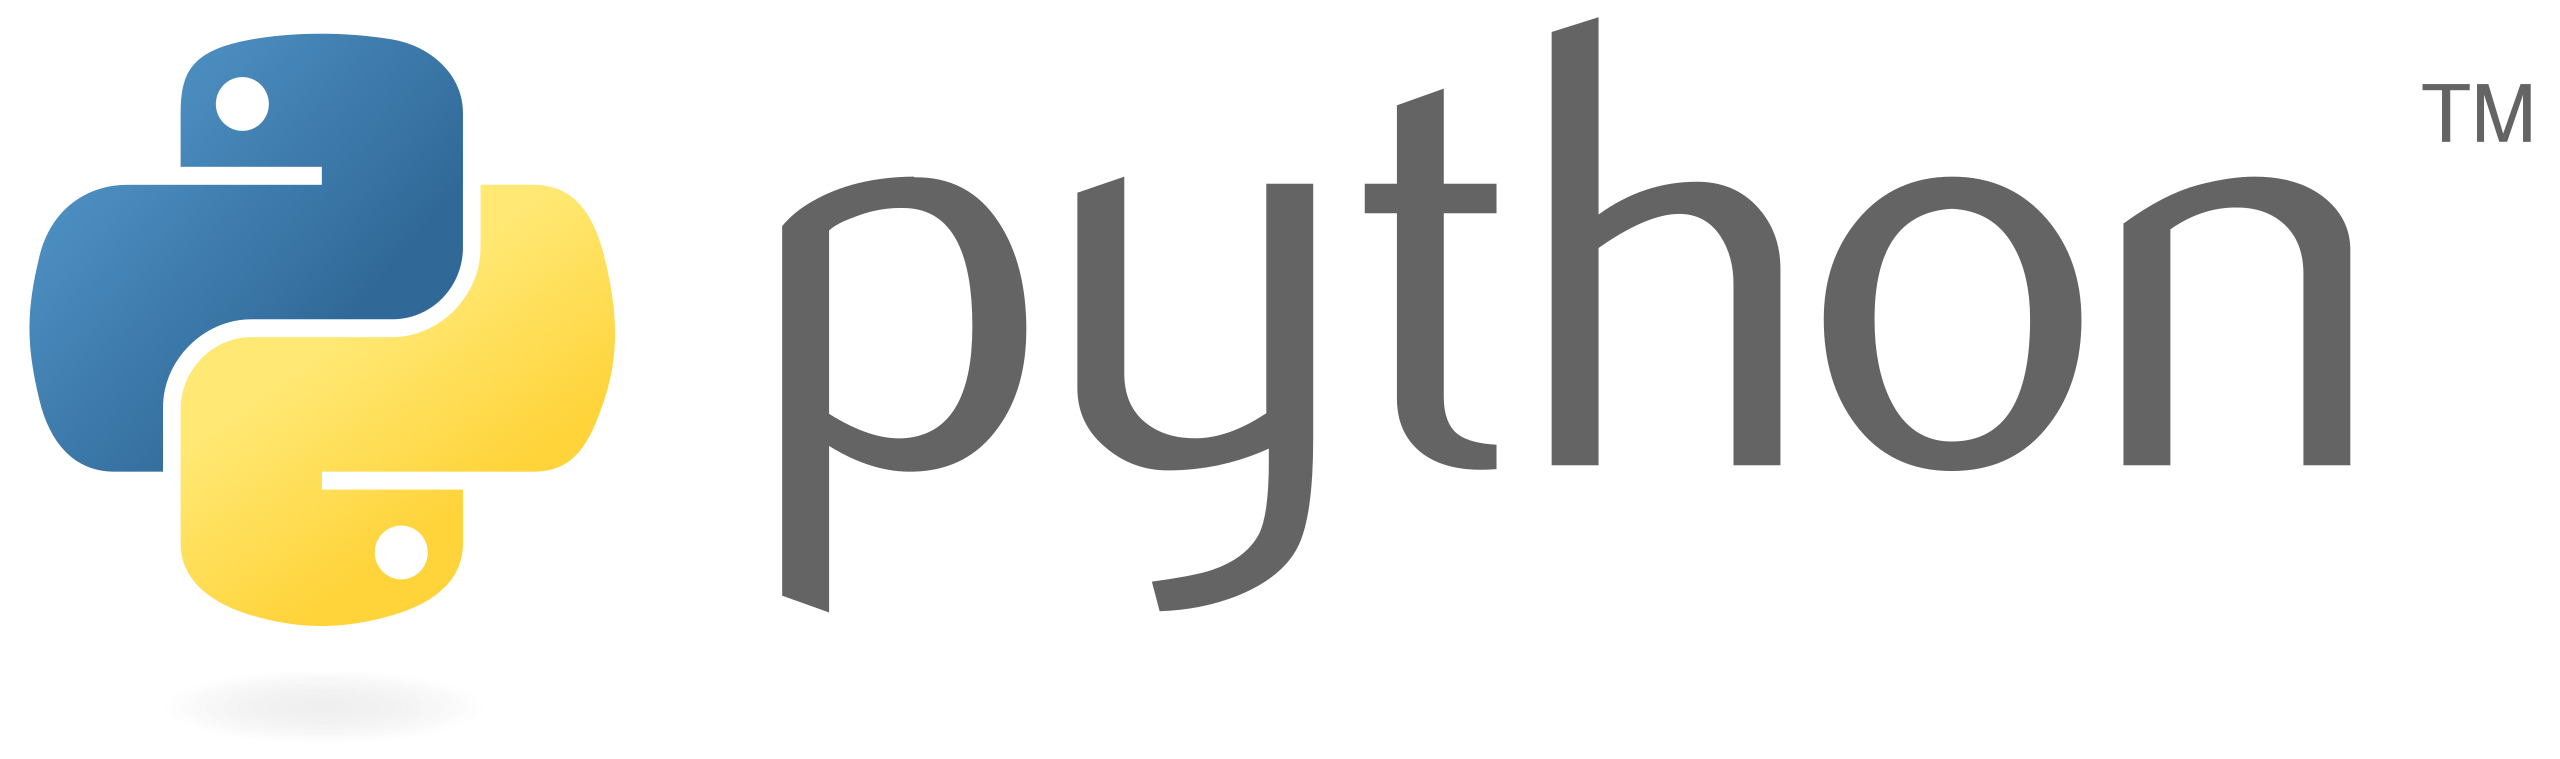 phyton logo